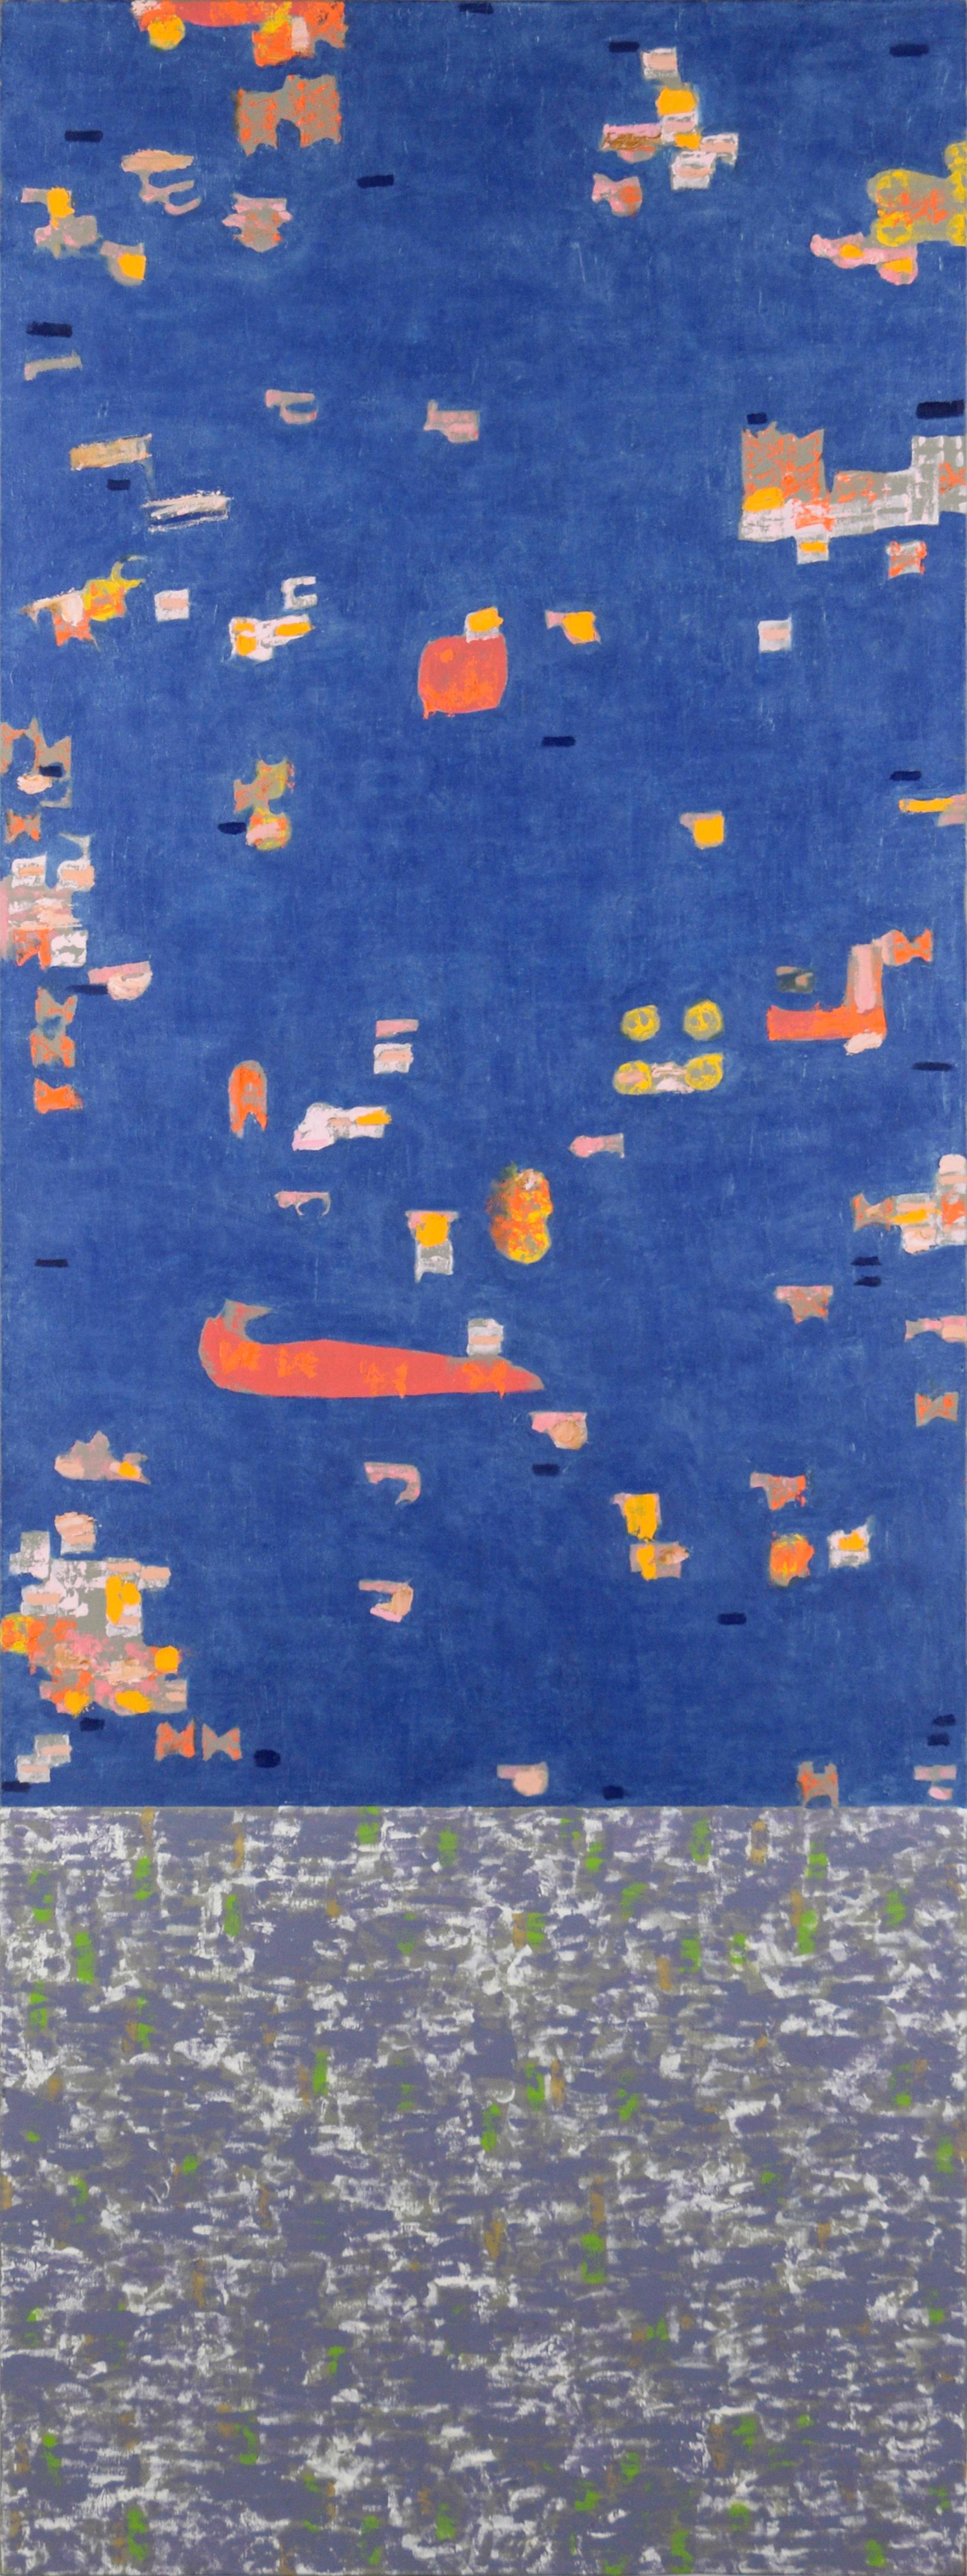 « Pre-Flood », abstrait contemporain à grande échelle en bleu - Painting de Michael Pauker 